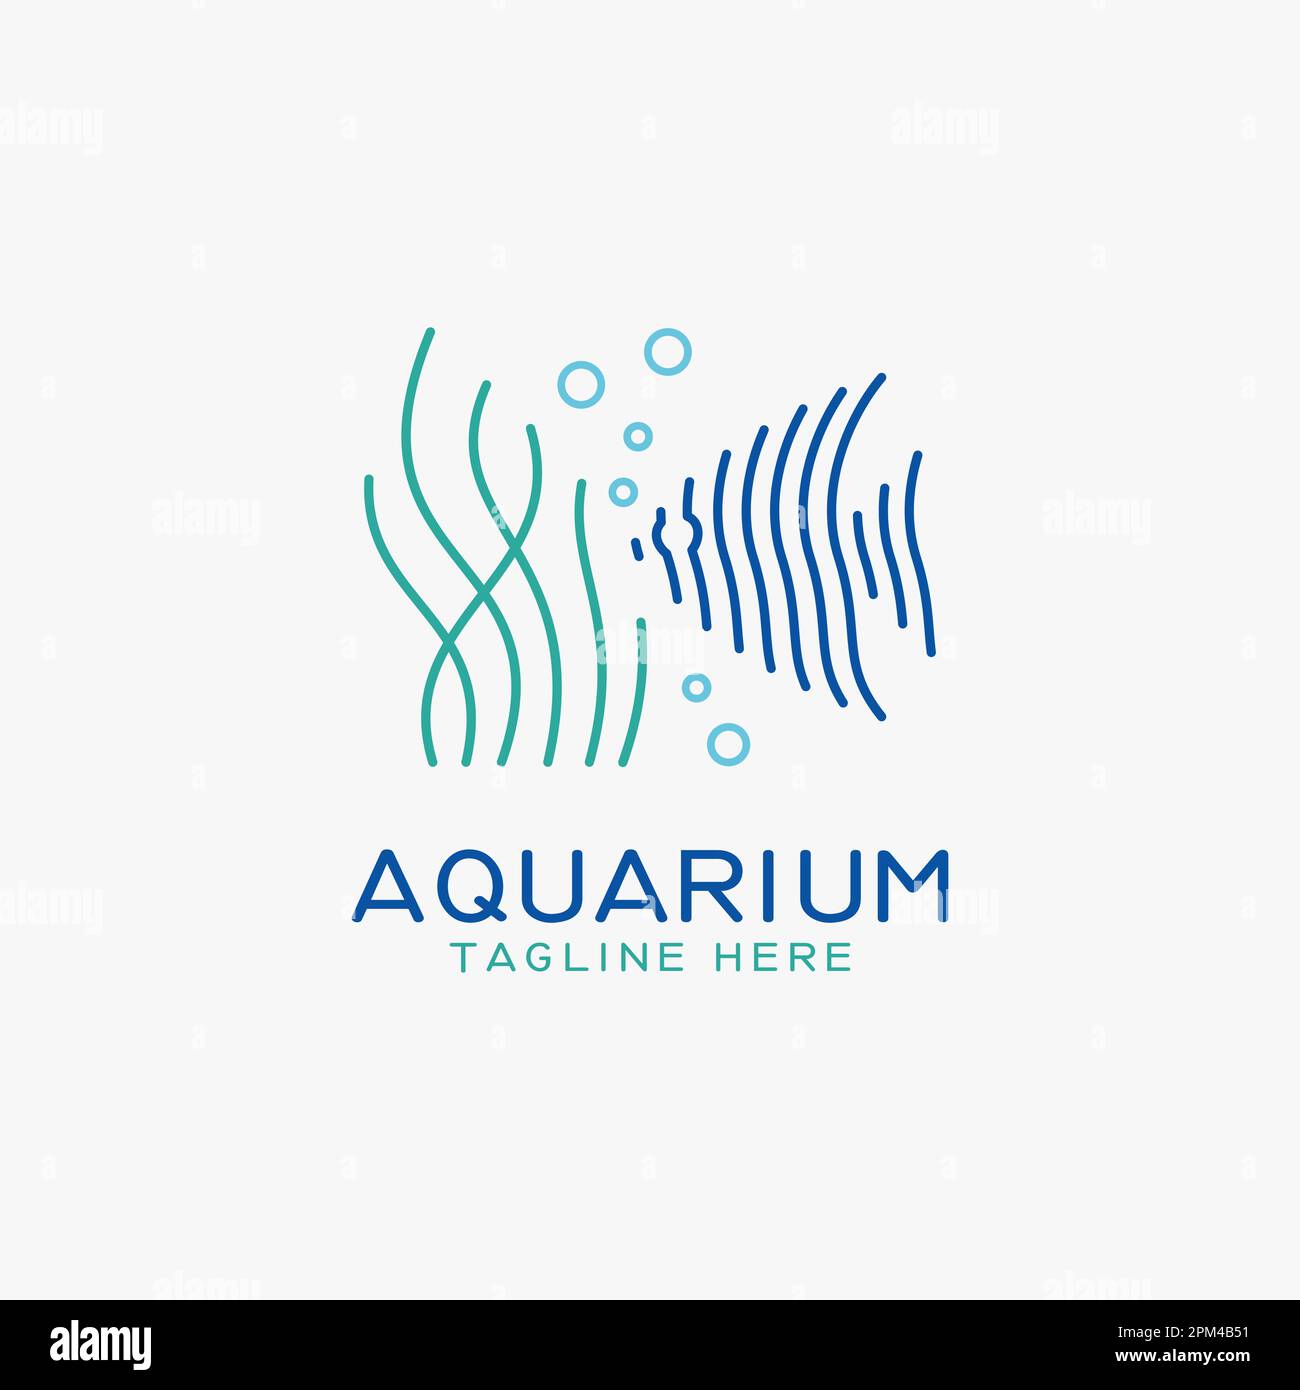 Aquarium and fish logo design Stock Vector